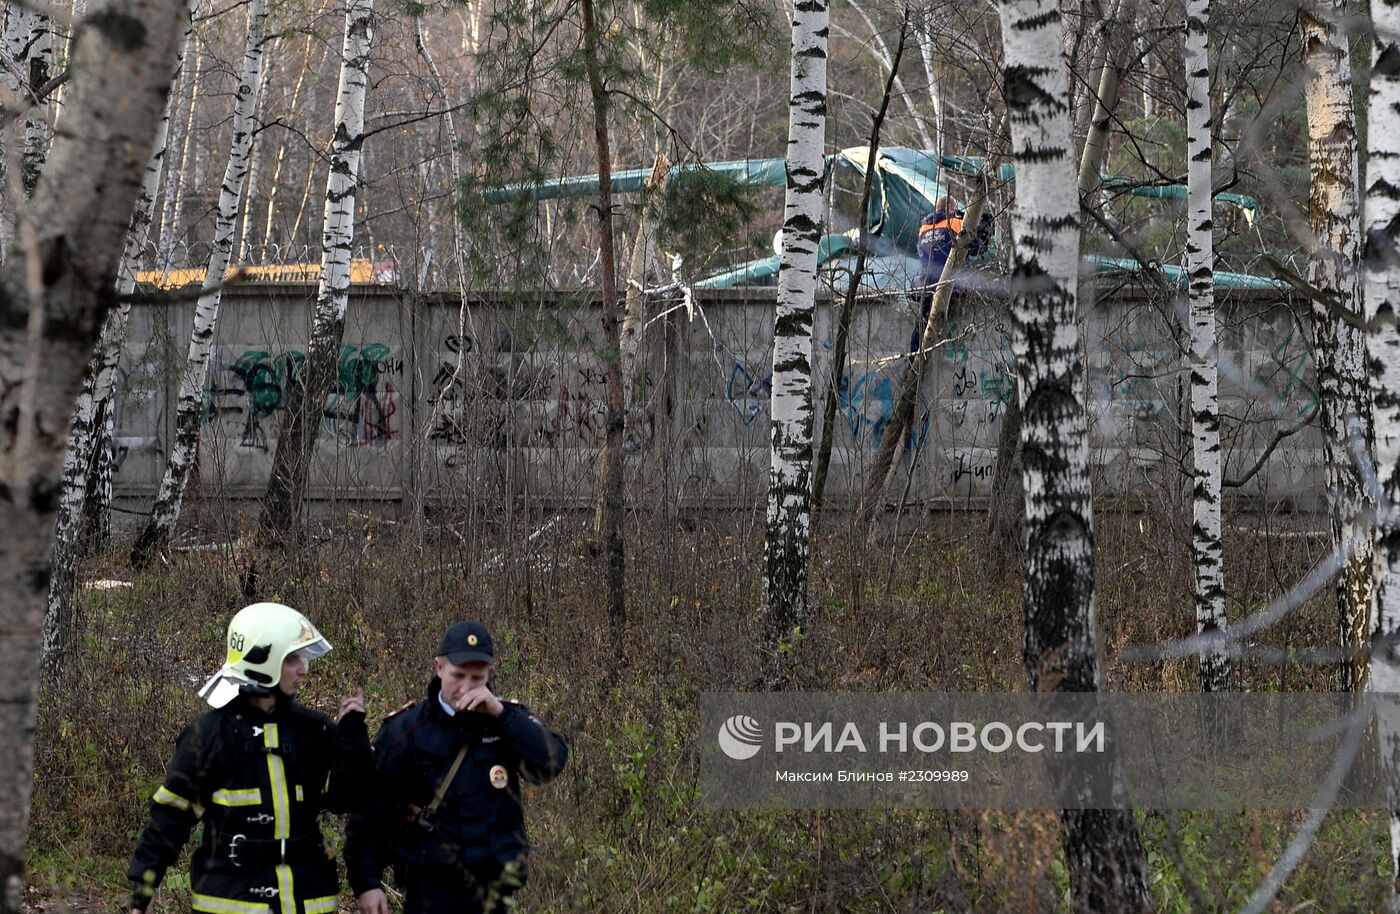 Вертолет Ка-52 упал в районе Выхино-Жулебино на юго-востоке Москвы